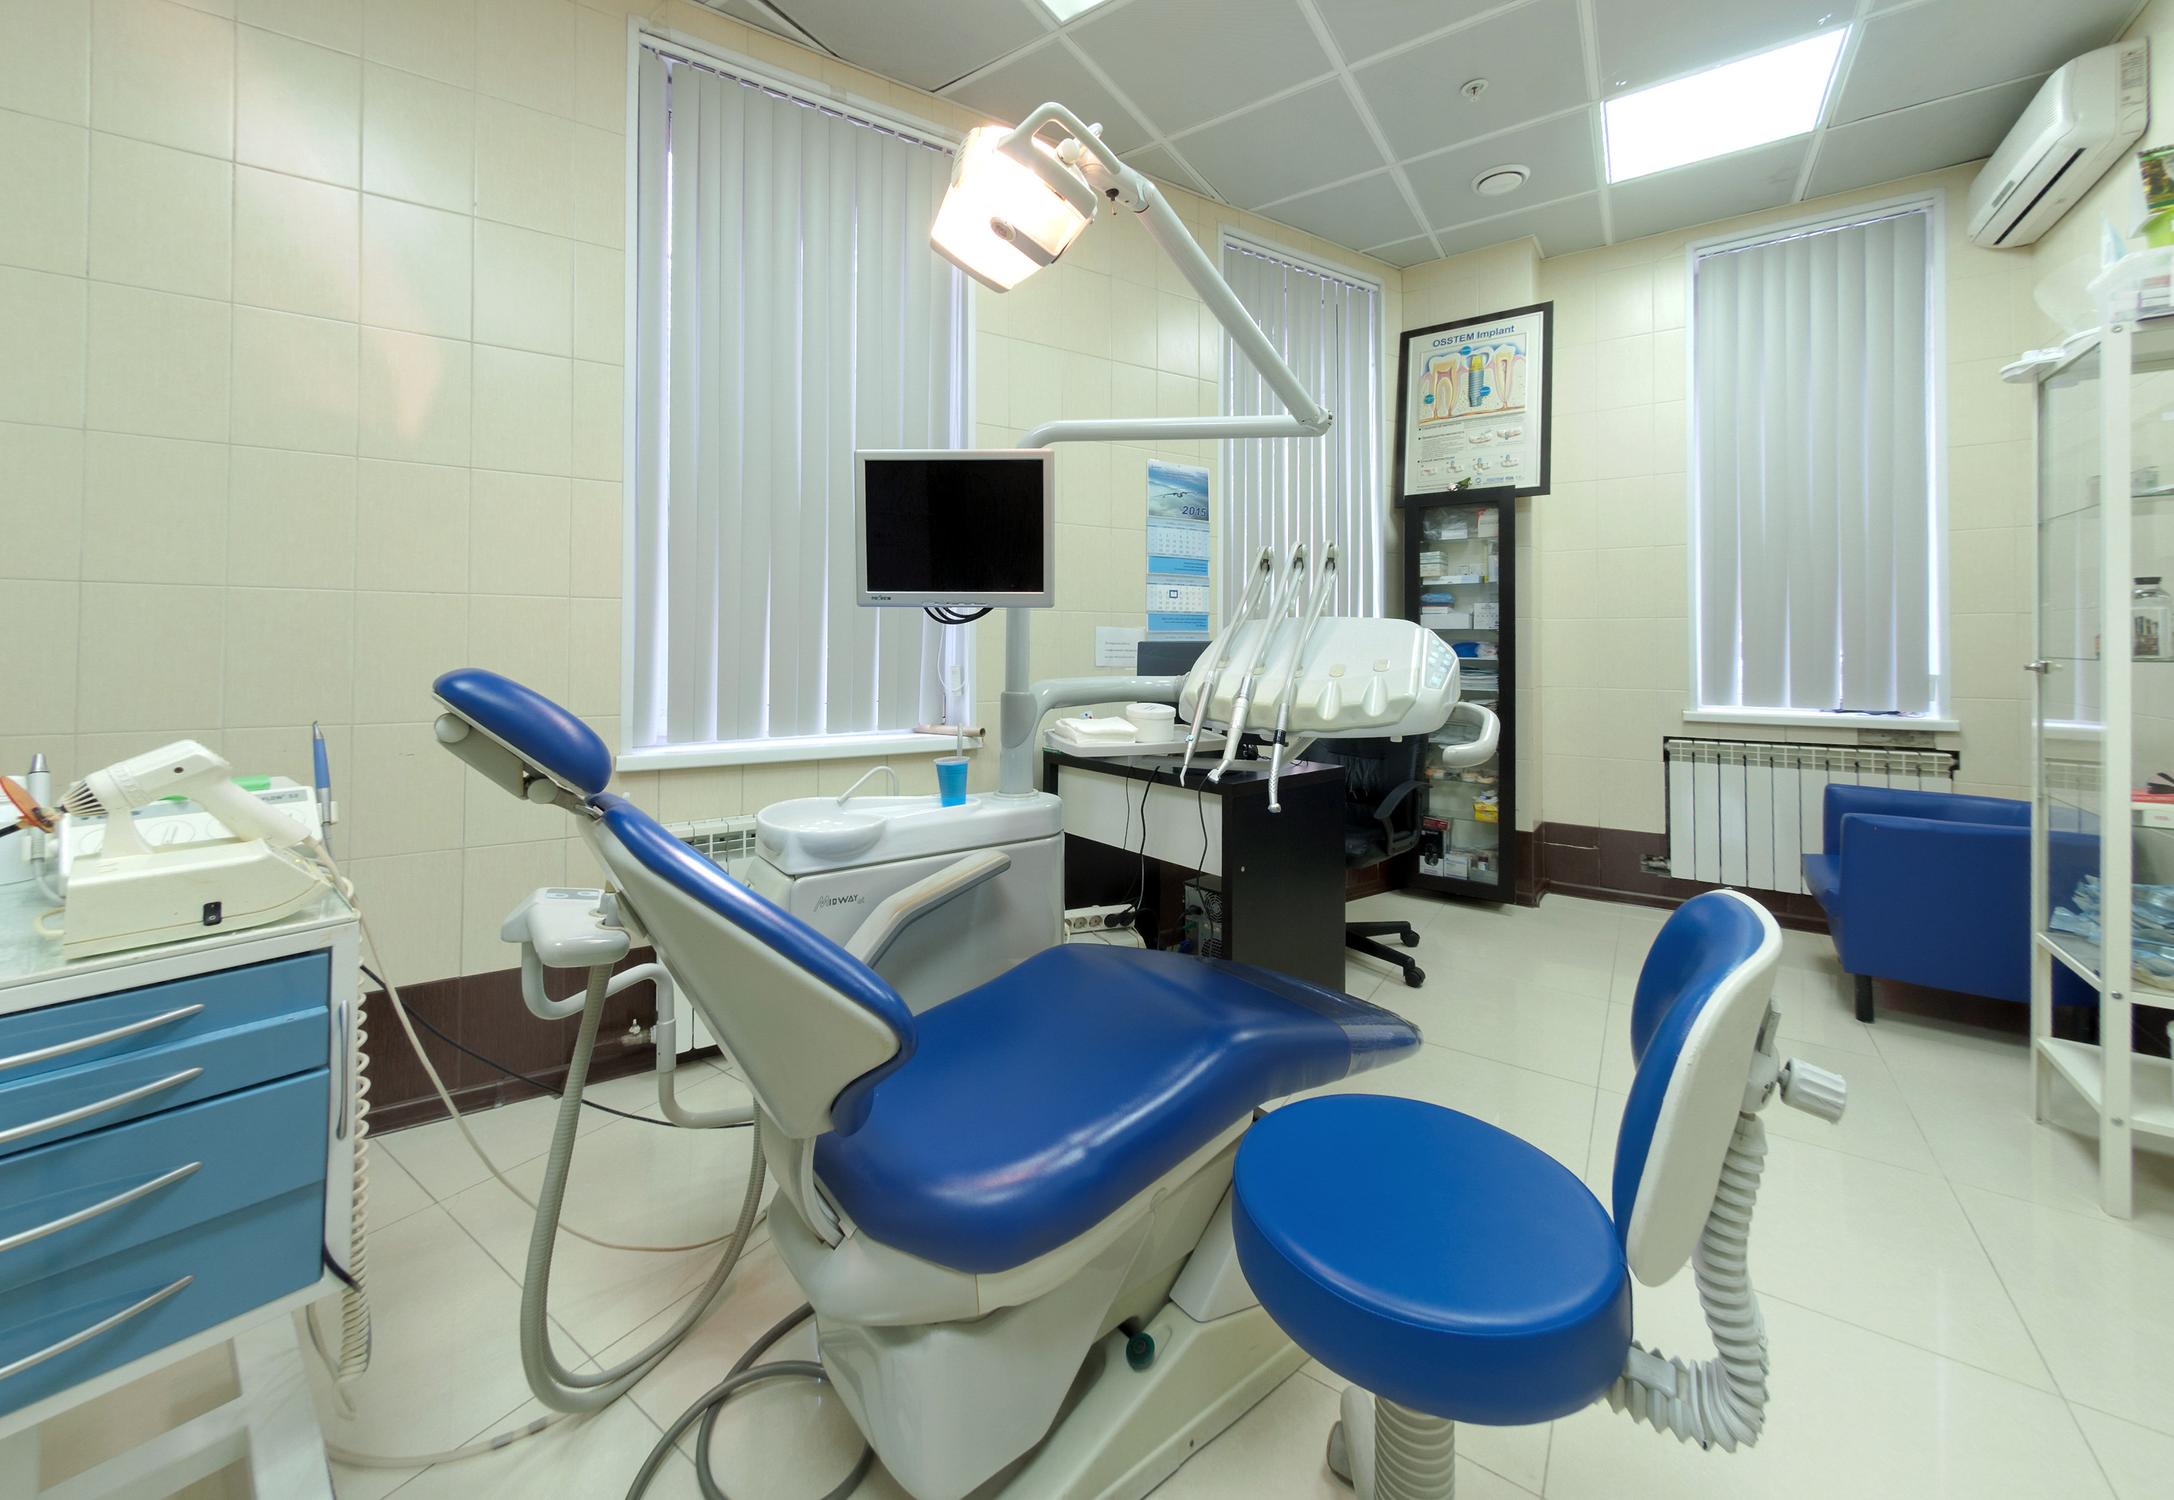 Добромед на коровинском отзывы стоматология